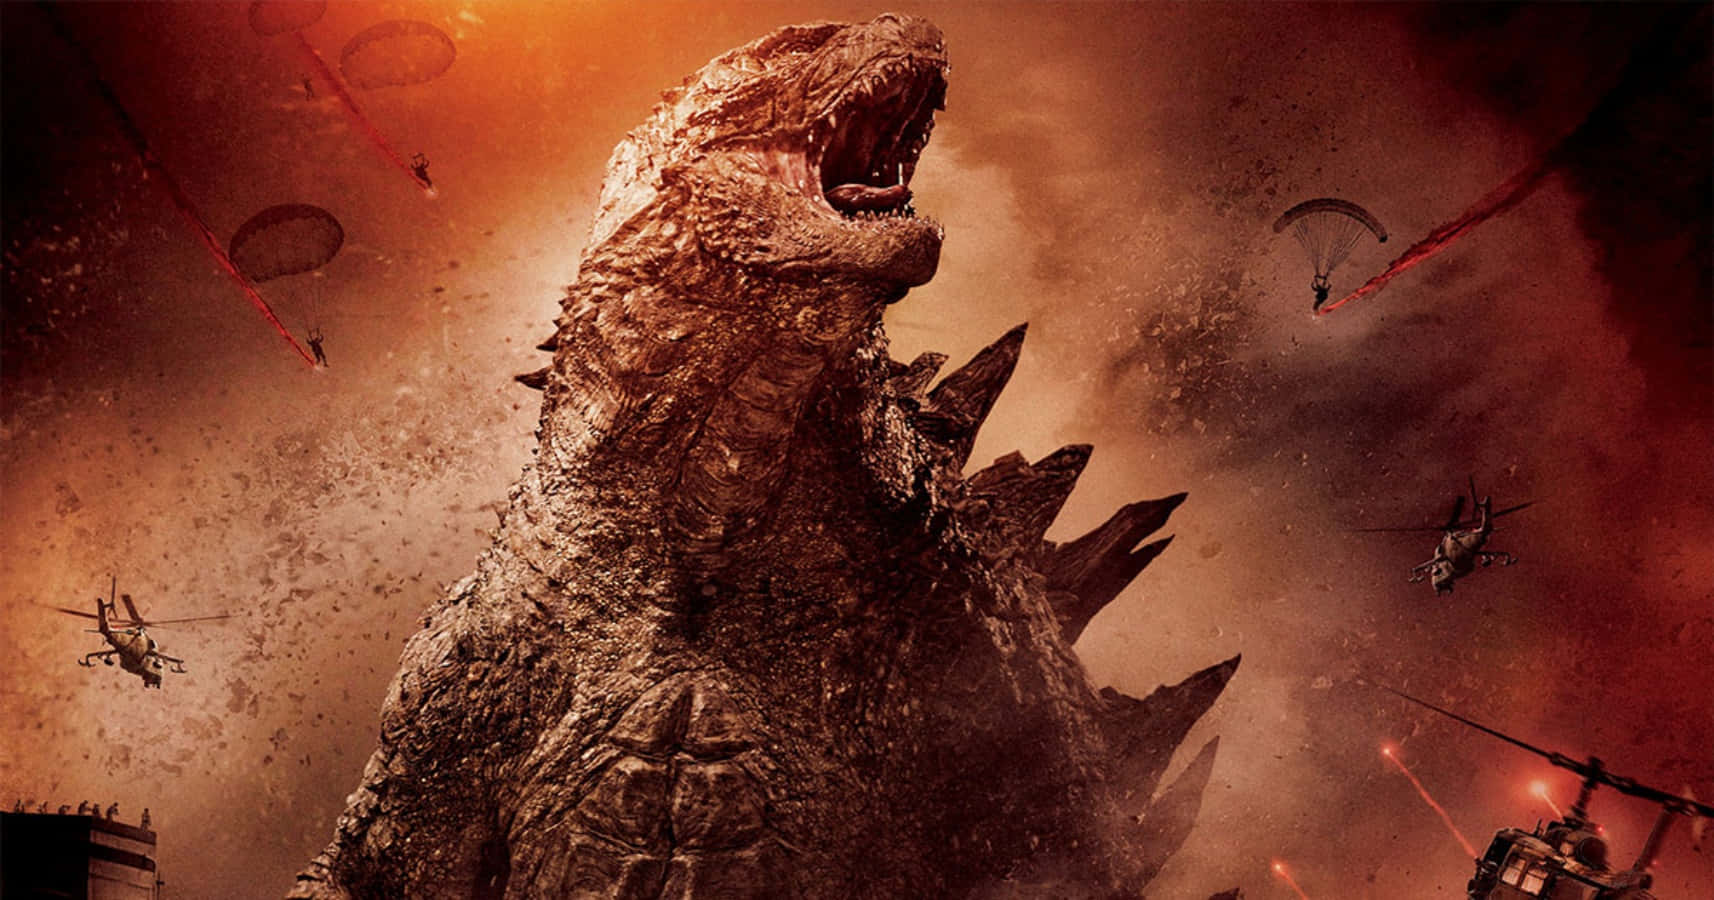 Godzillabrüllendes Angriffsbild